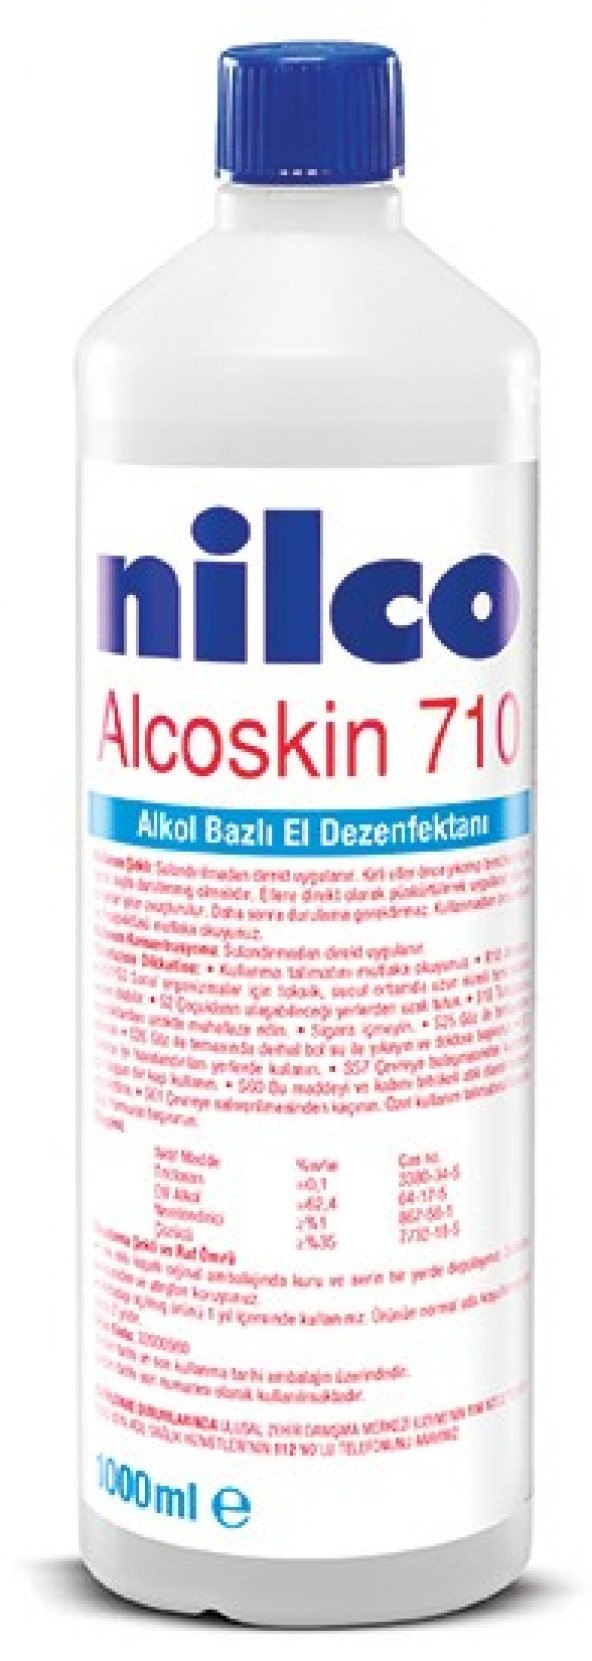 Alkol Bazlı El Dezenfektanı Nilco Alcoskin 710 0.70 Lt / NİLCO